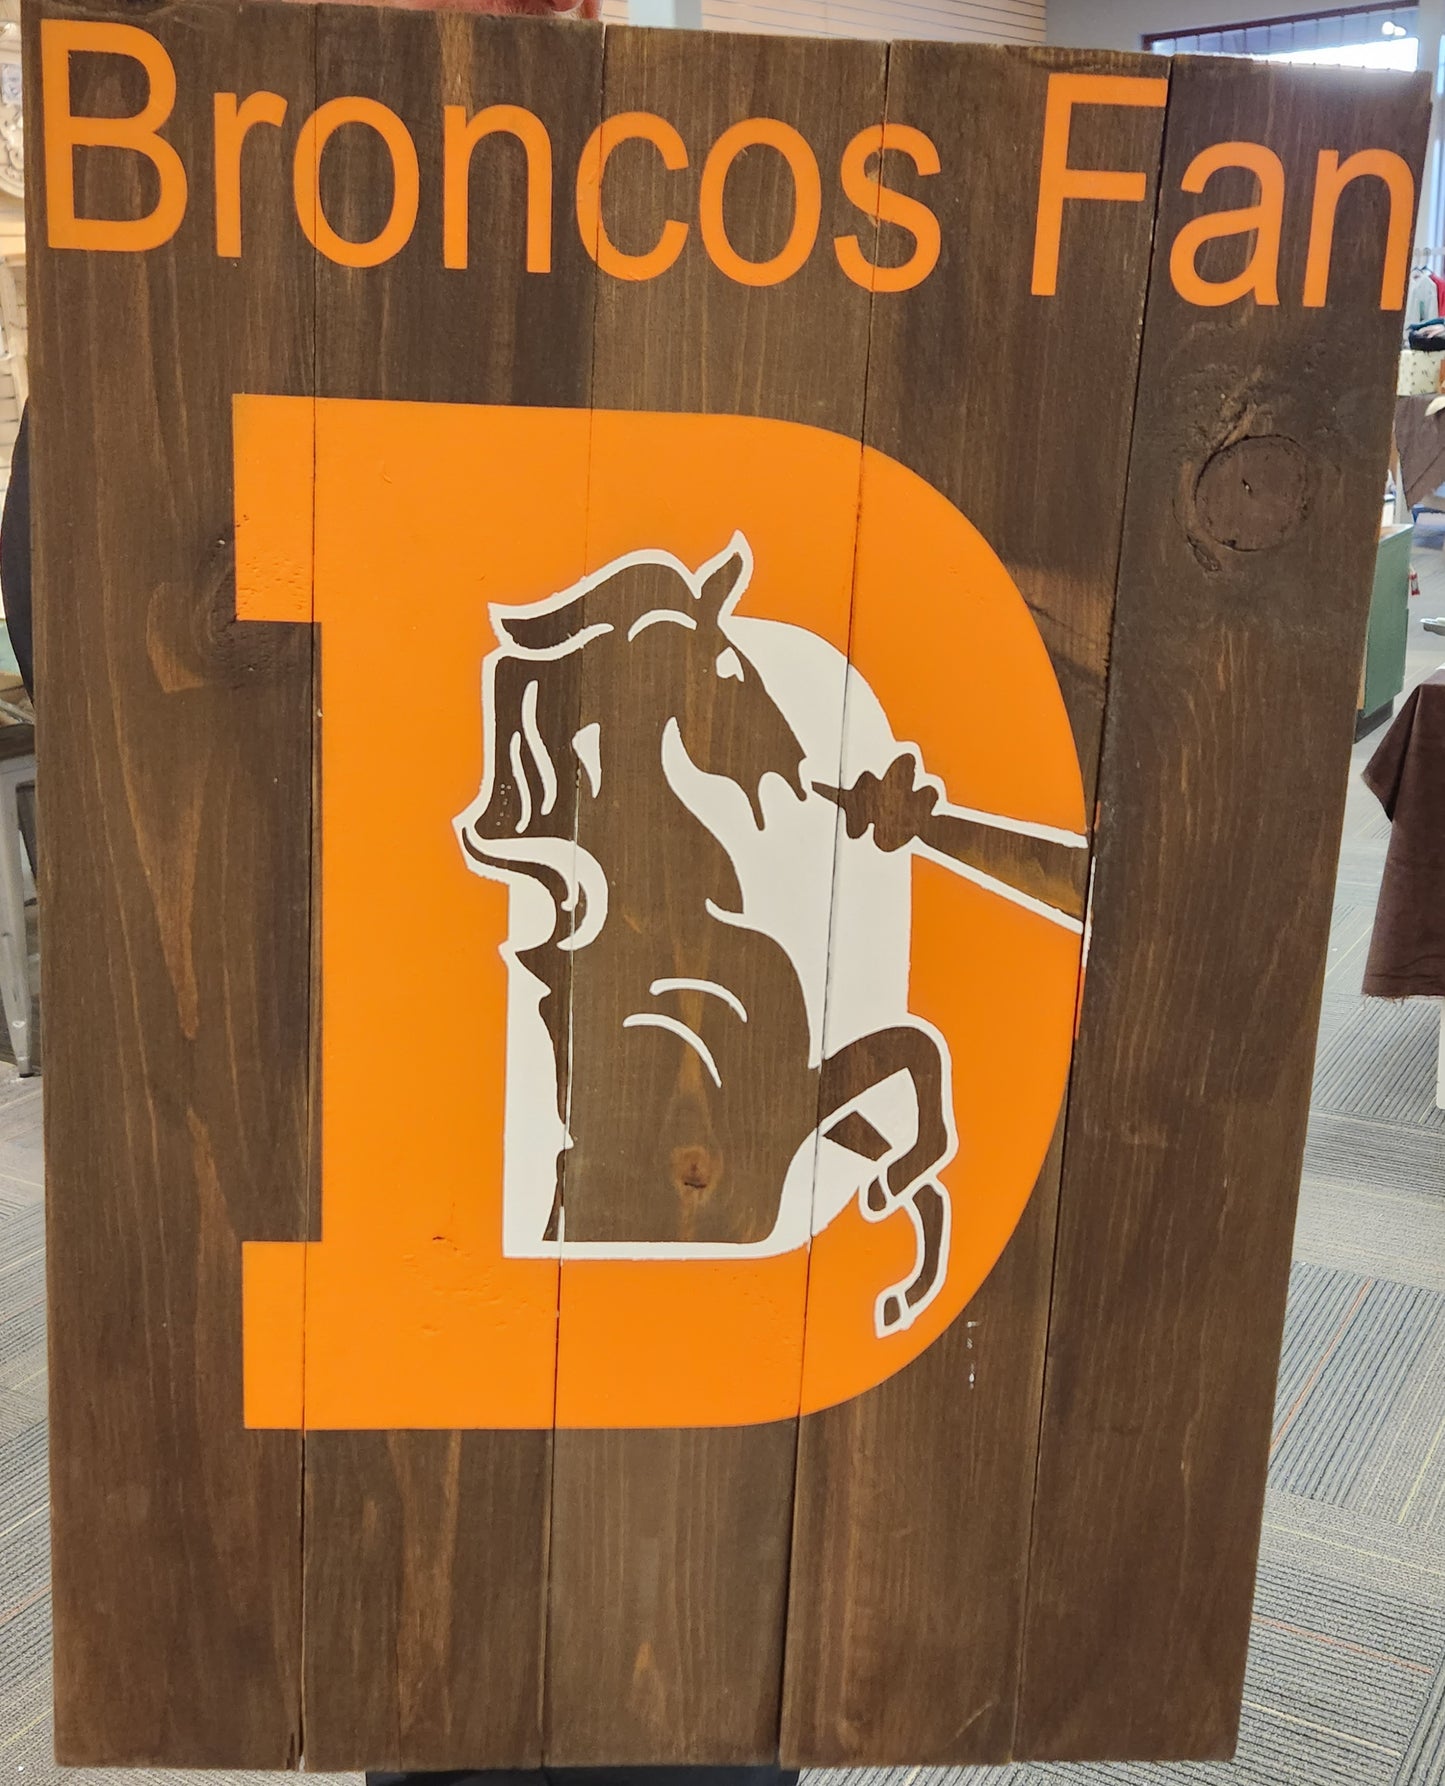 Broncos Fan - NOCO